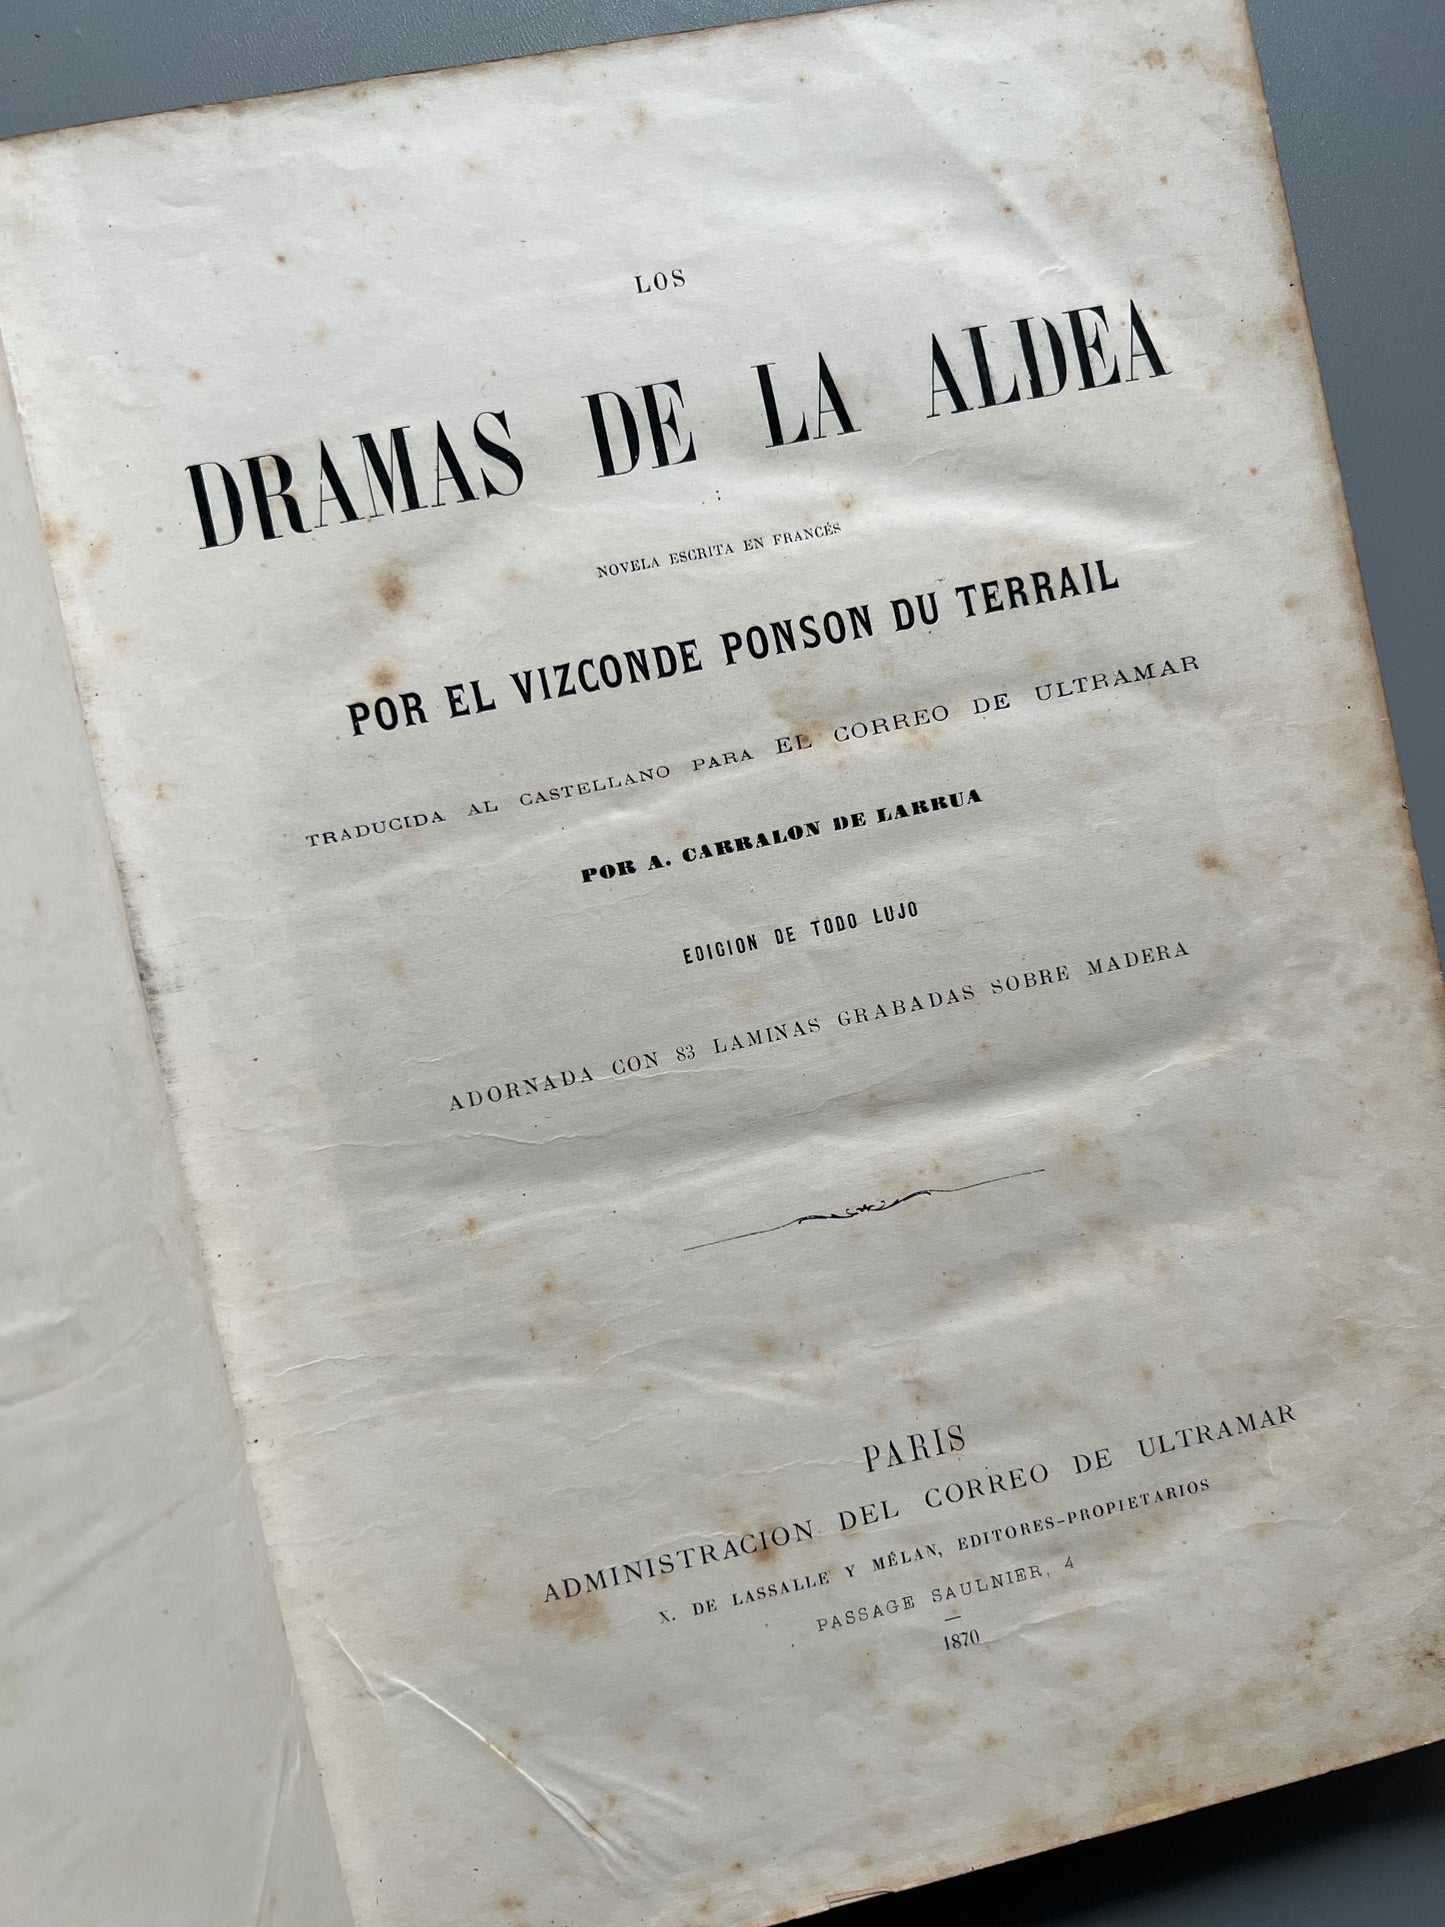 Los dramas de aldea, Vizconde Ponson du Terrail - Administración del Correo de Ultramar, 1870